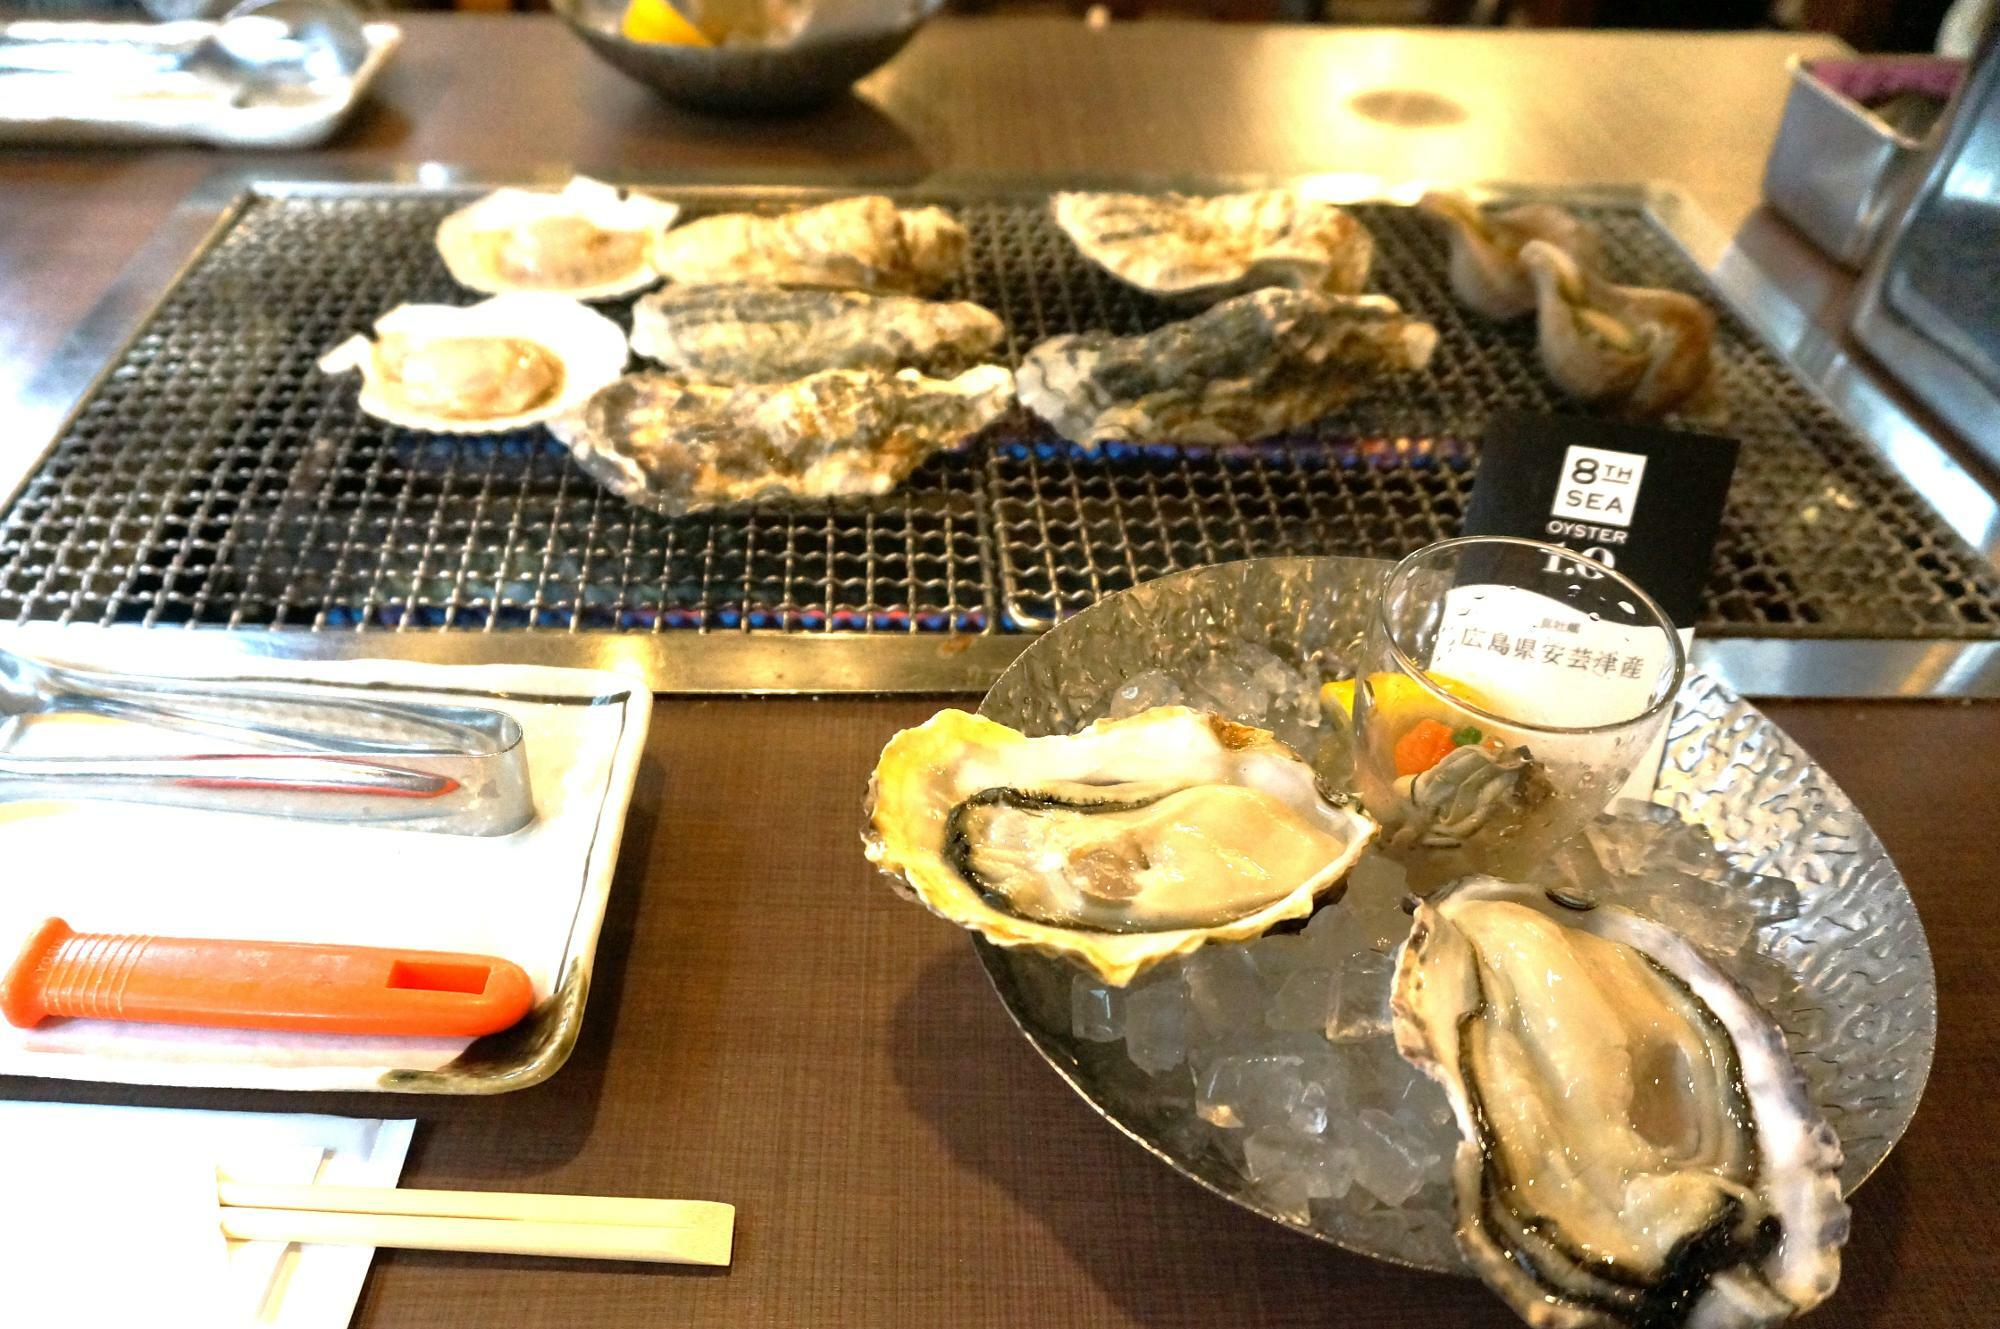 「入善　牡蠣ノ星」さんに入店。着席したときには、美味しそうな立派な牡蠣たちがセットされていました。